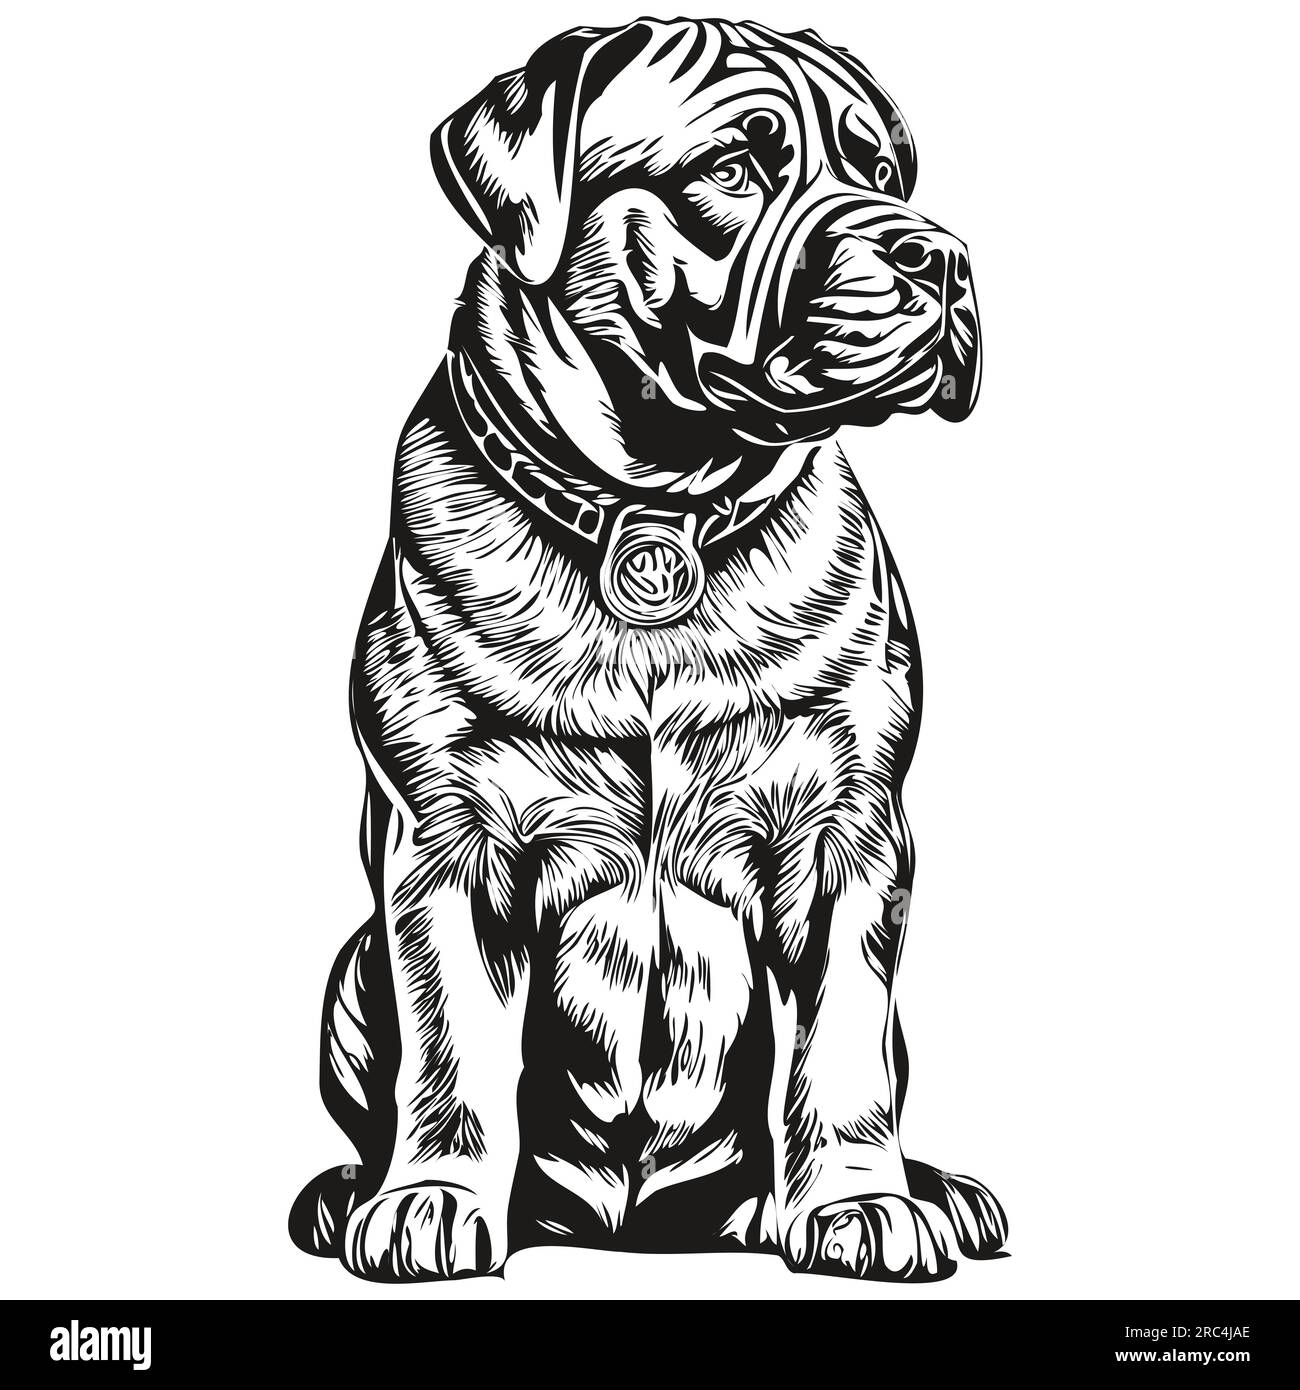 Dessin au trait de race de chien de Mastiff napolitain, clip art animal dessin à la main vecteur noir et blanc animal de compagnie réaliste de race Illustration de Vecteur